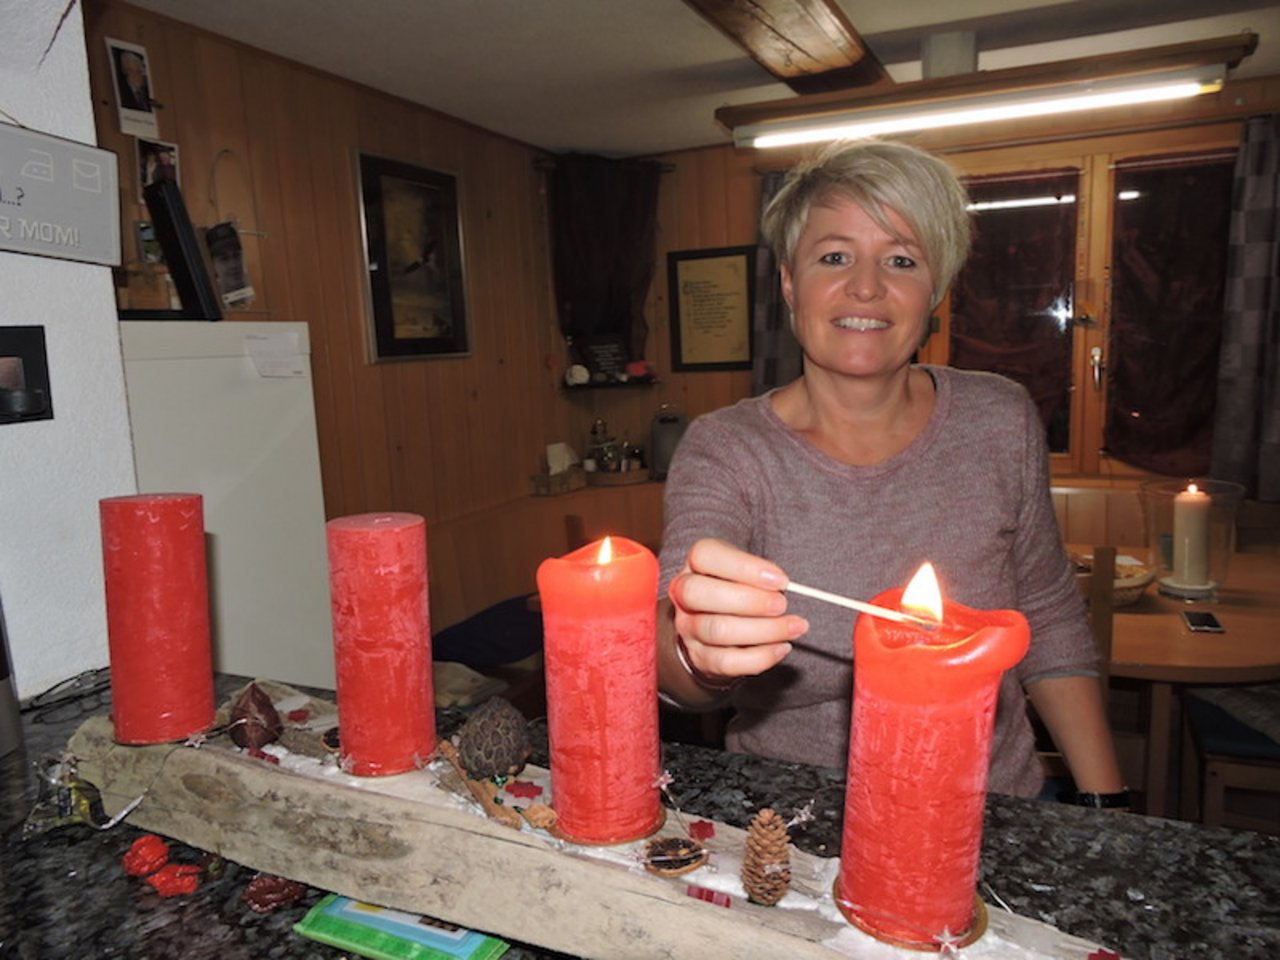 Für Monika Mai-Baltensberger kommen mit der Weihnachtszeit Tage voller Kerzenschein. Sie vergisst aber auch die Menschen nicht, die einsam und alleine sind.(Bild Barbara Heiniger)